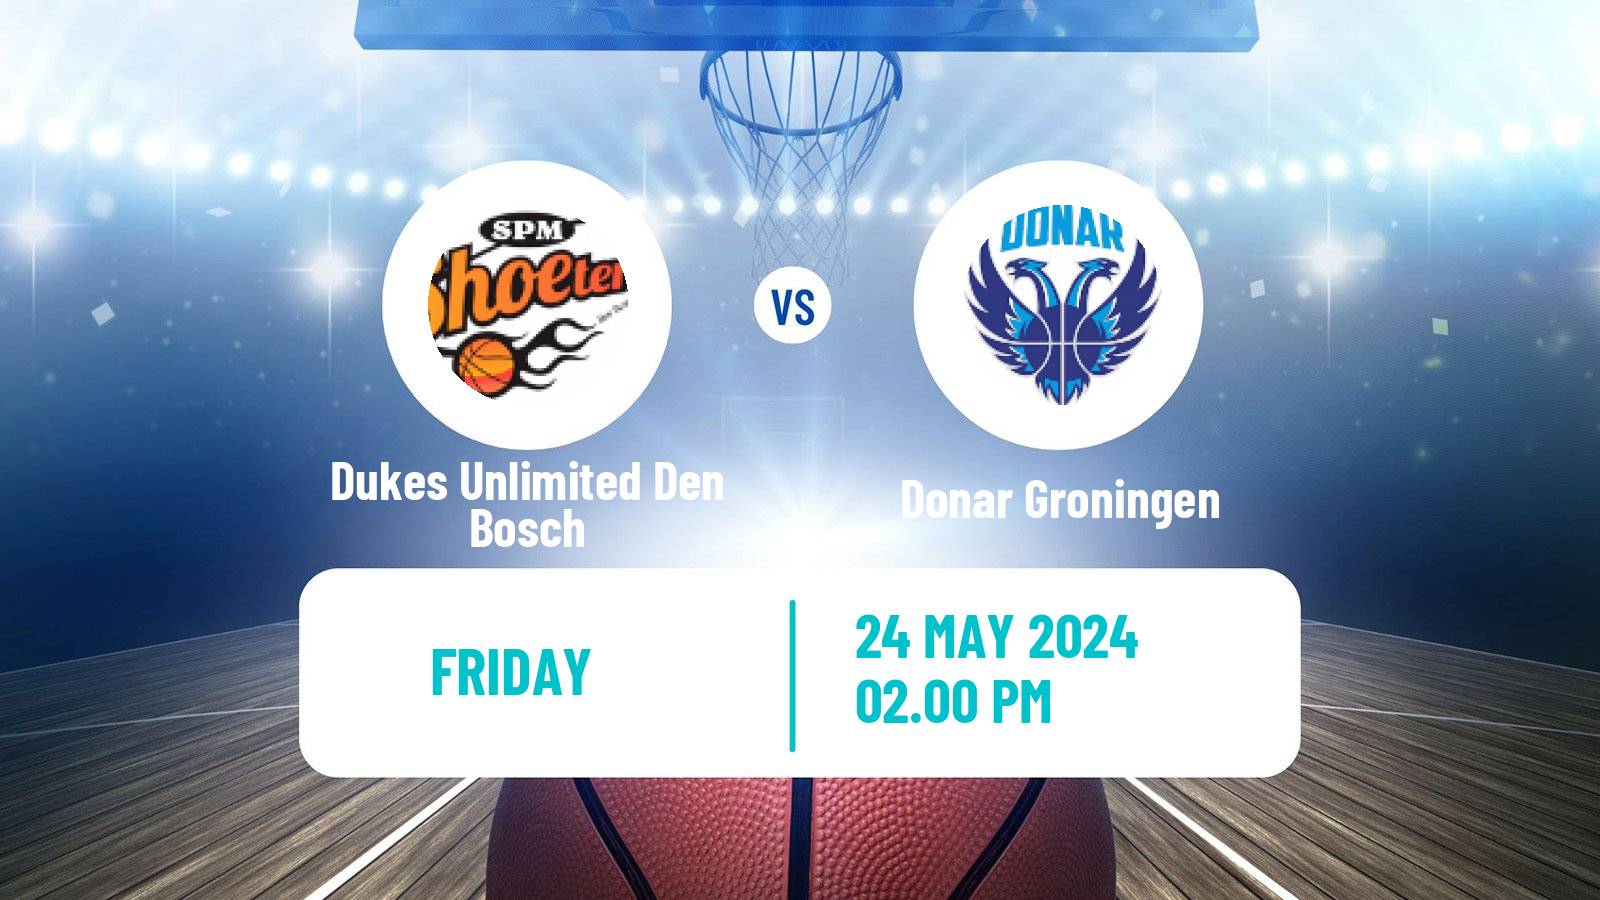 Basketball Dutch DBL Dukes Unlimited Den Bosch - Donar Groningen